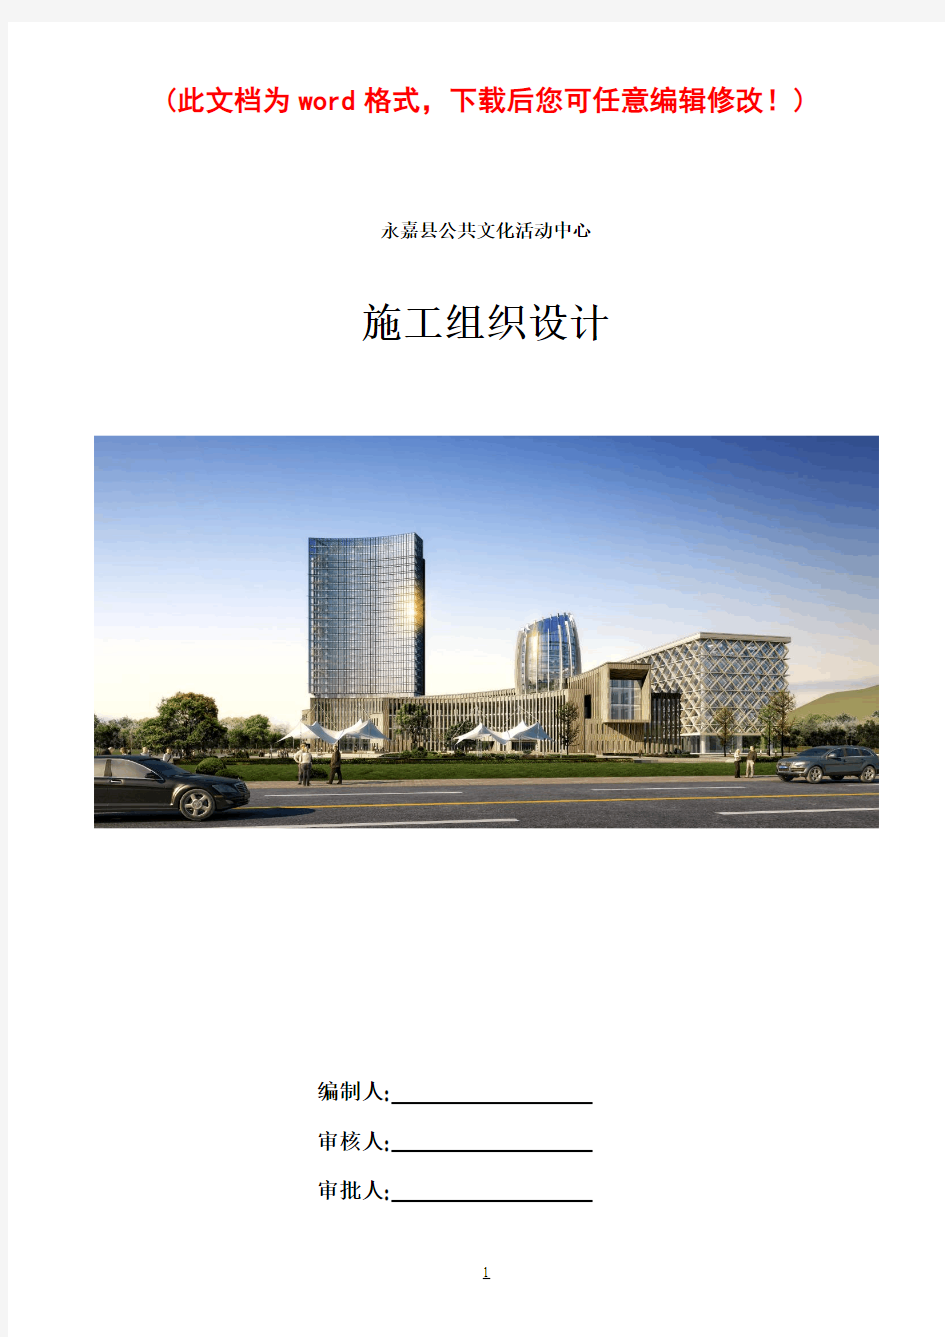 永嘉县公共文化活动中心 施工组织设计施工组织设计最终版